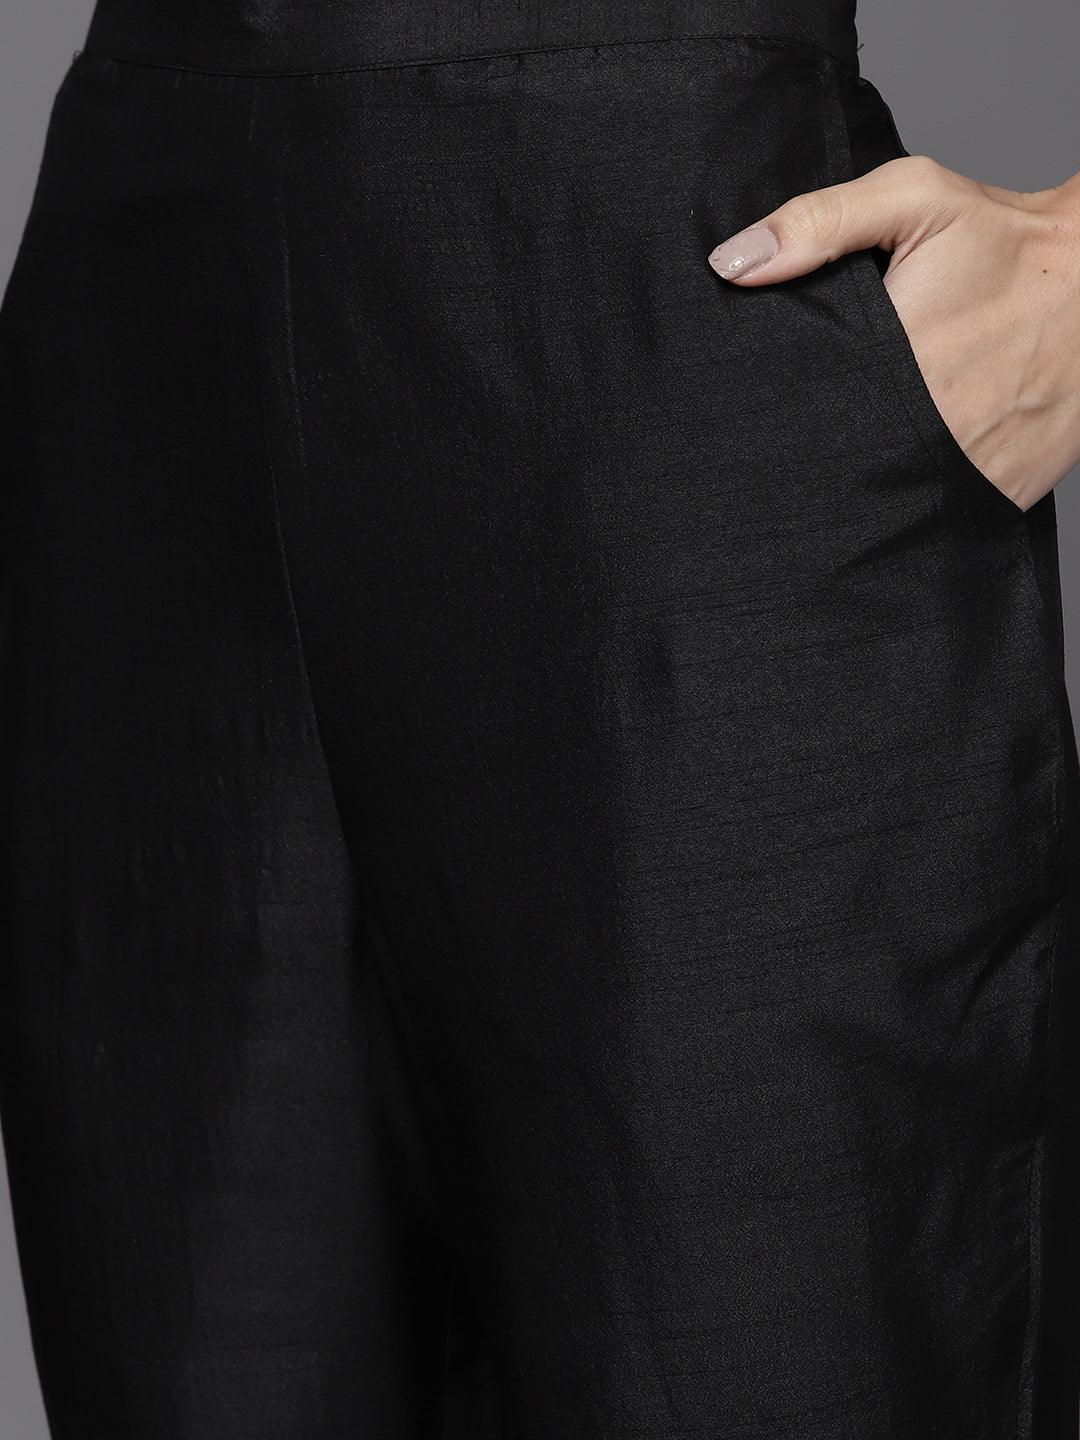 Black Solid Silk Blend Suit Set - Libas